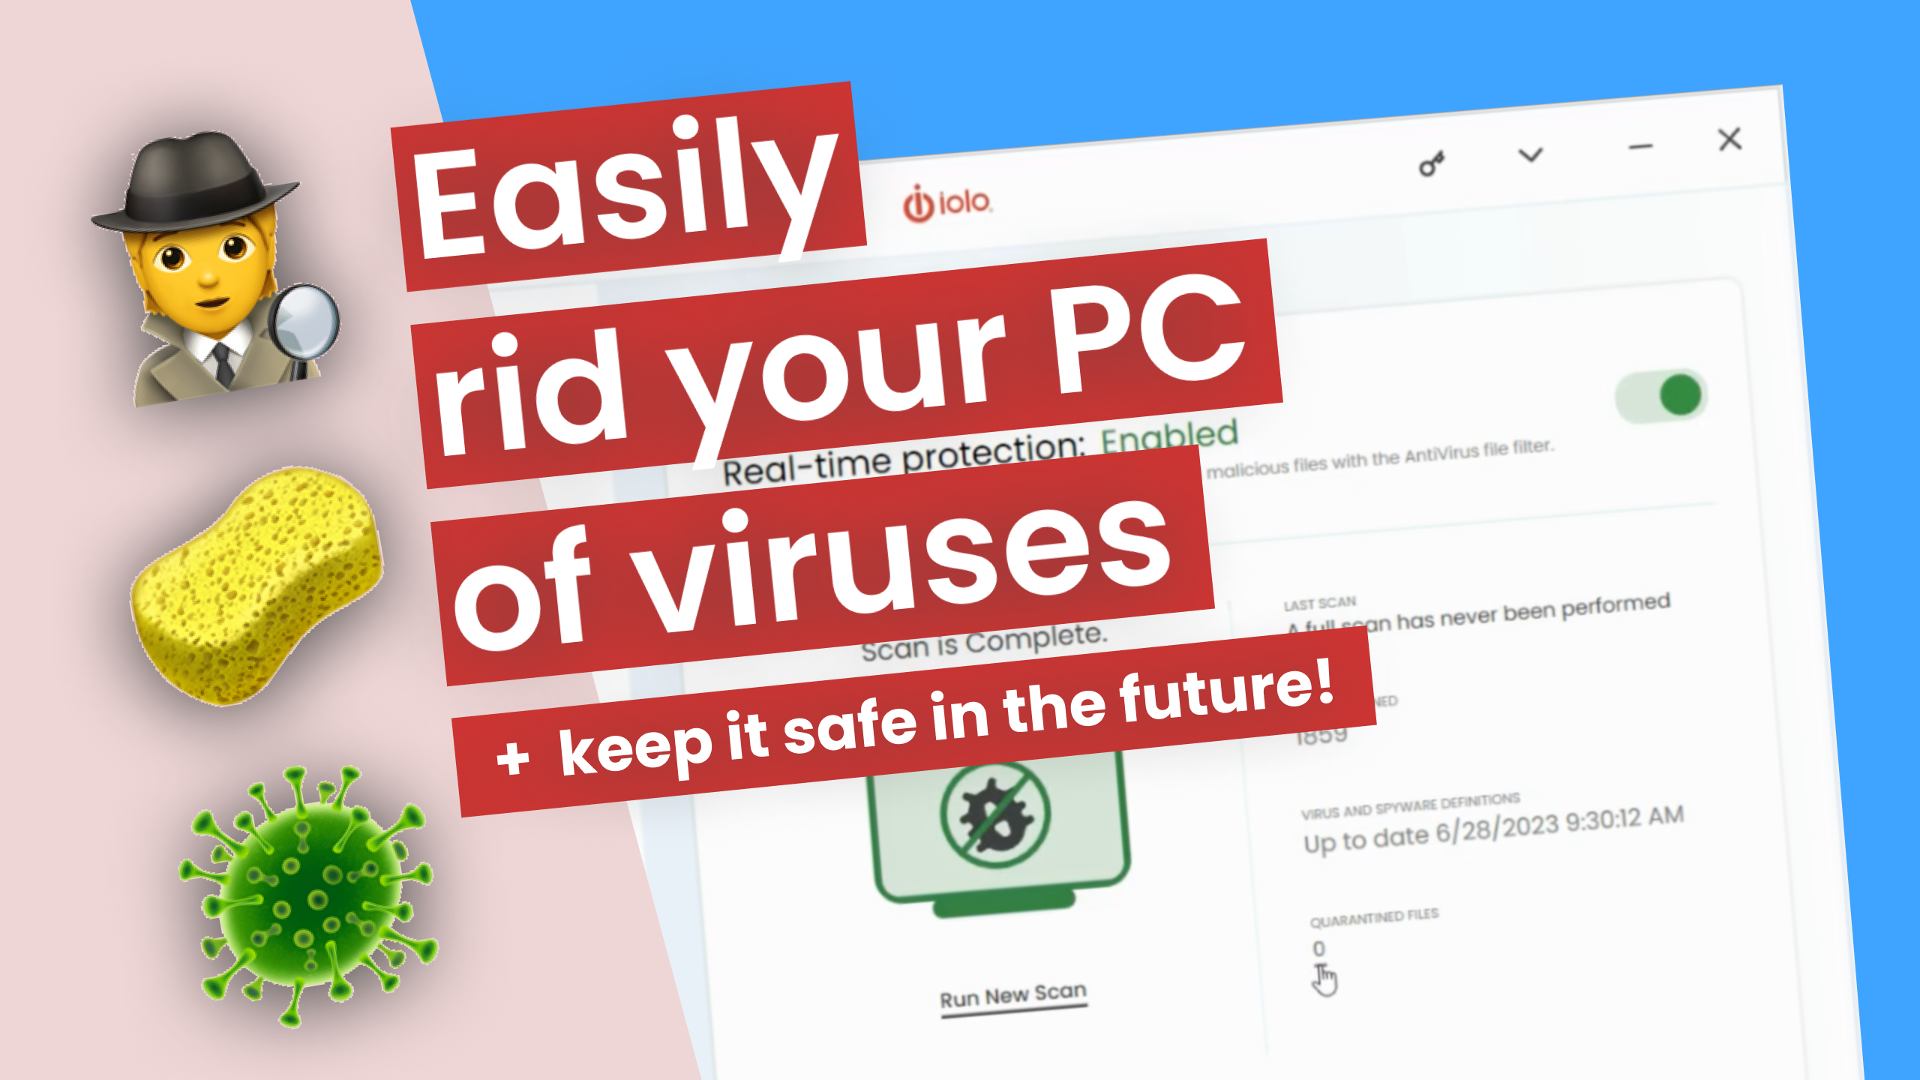 easily rid your pc of viruses yt thumbnail